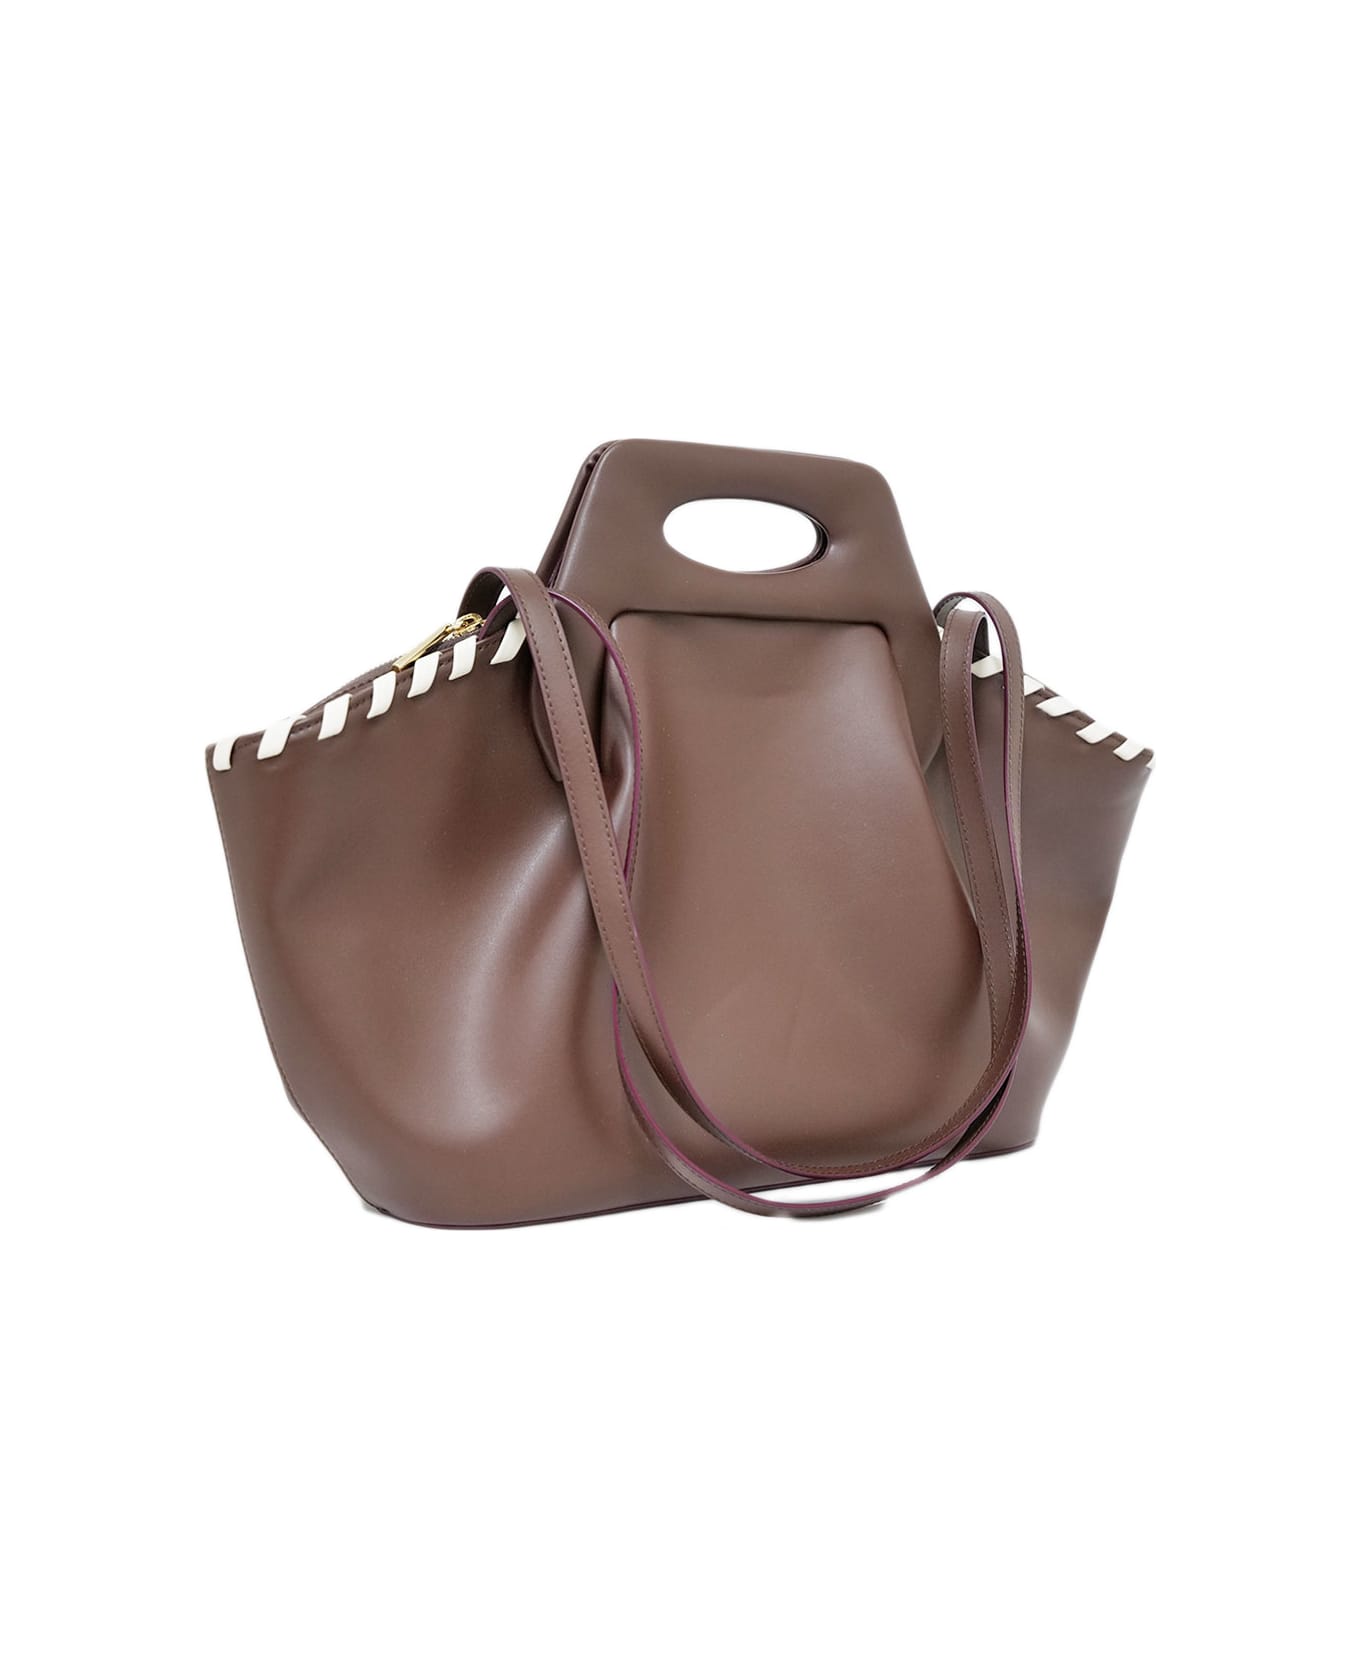 THEMOIRè Handbag - Brown